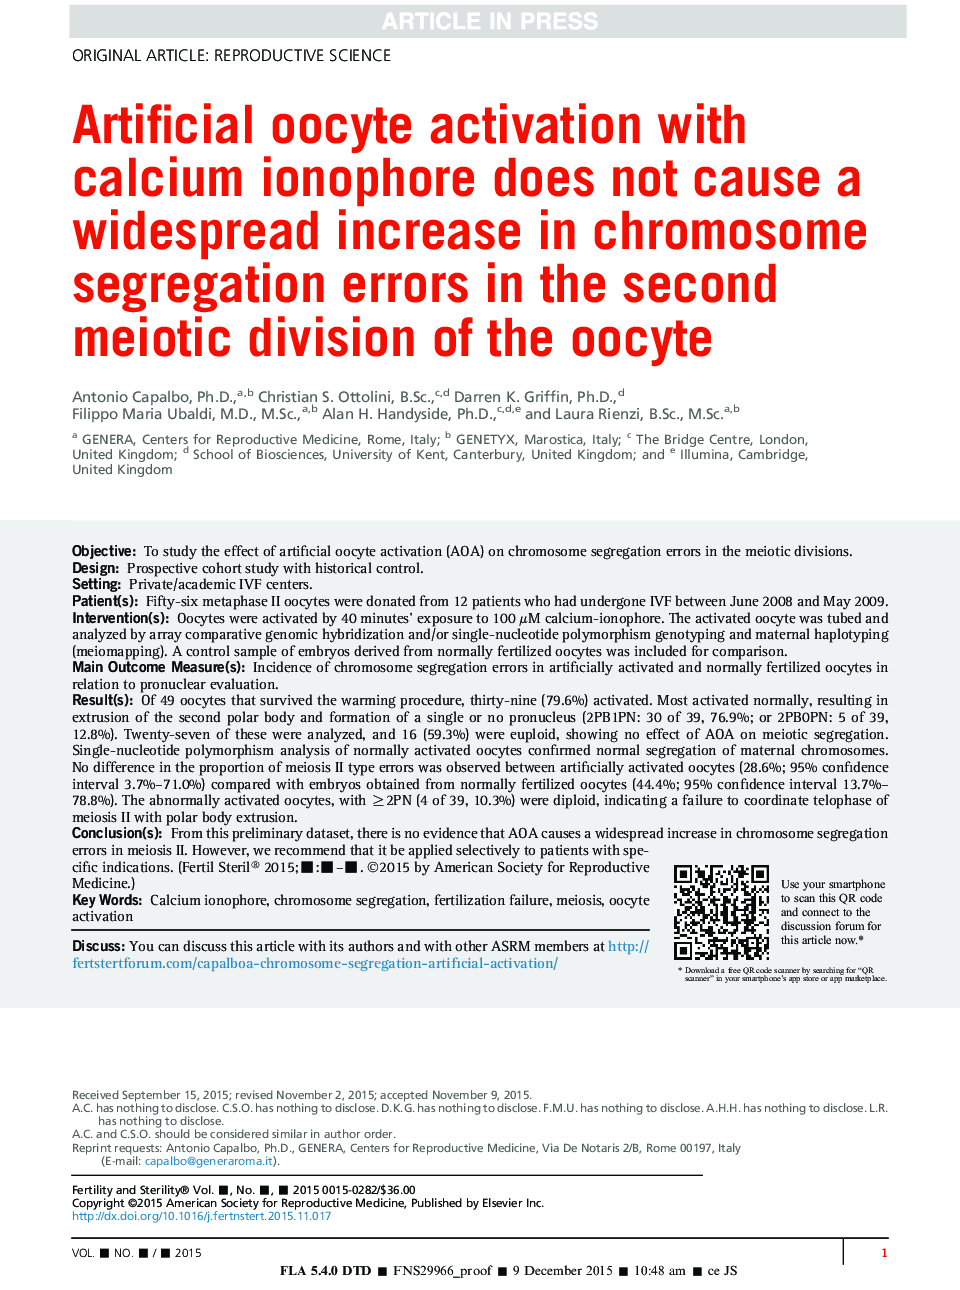 فعال سازی اووسیت مصنوعی با یونوفور کلسیم باعث افزایش گسترده ای در خطاهای جداسازی کروموزوم در بخش دوم مونوسیت تخمک می شود 